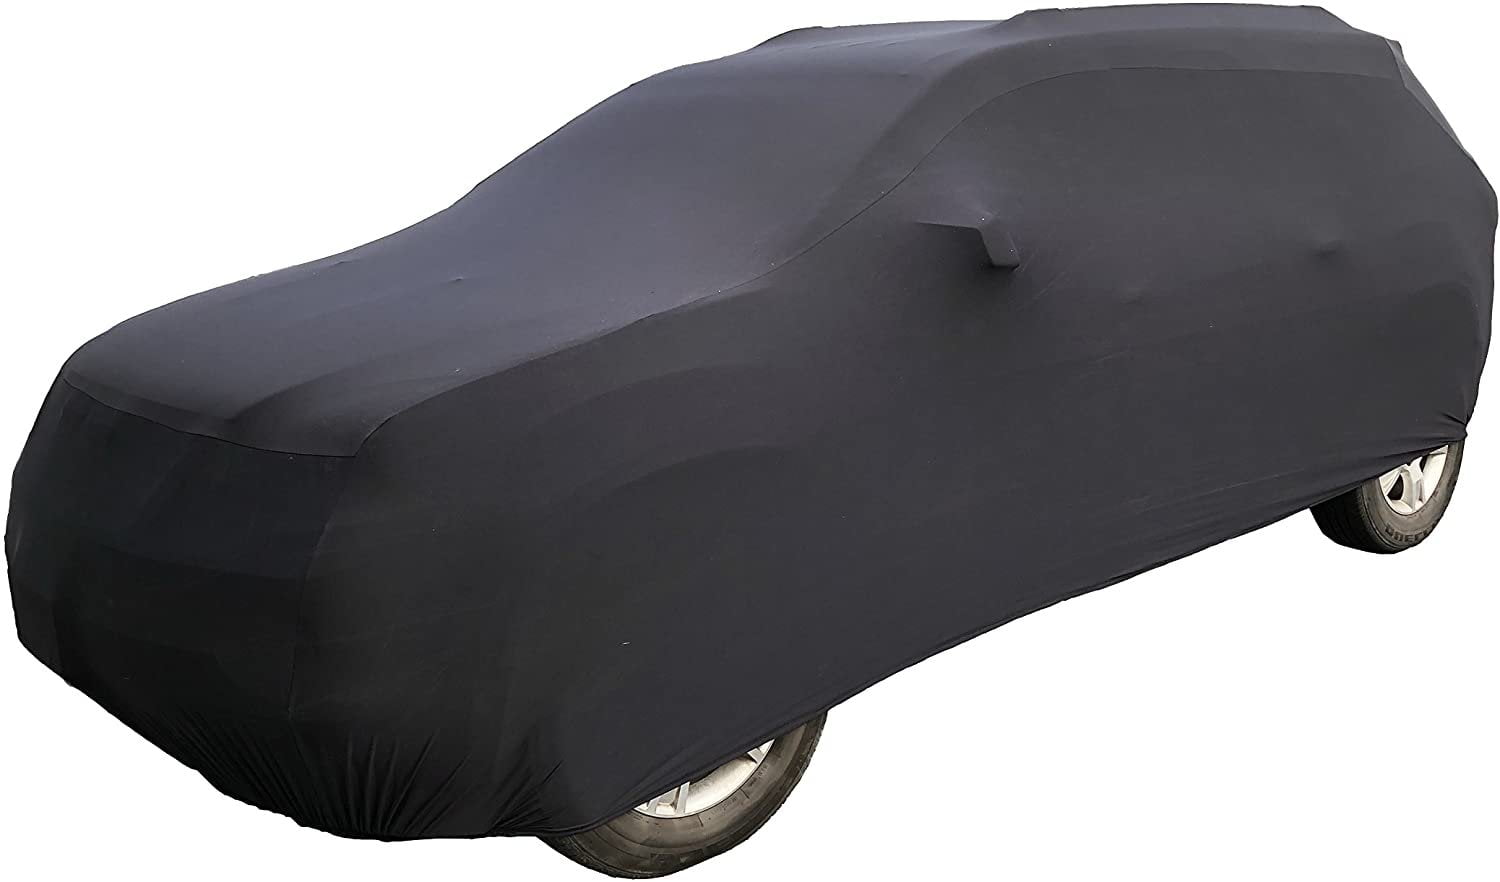 Size : 2014 LXYPLM Bâche Voiture Compatible avec Mitsubishi Outlander Couverture Voiture imperméable Respirante antipoussière Sunproof Coupe-Vent SUV Voiture Bâche avec Sac de Rangement Portable